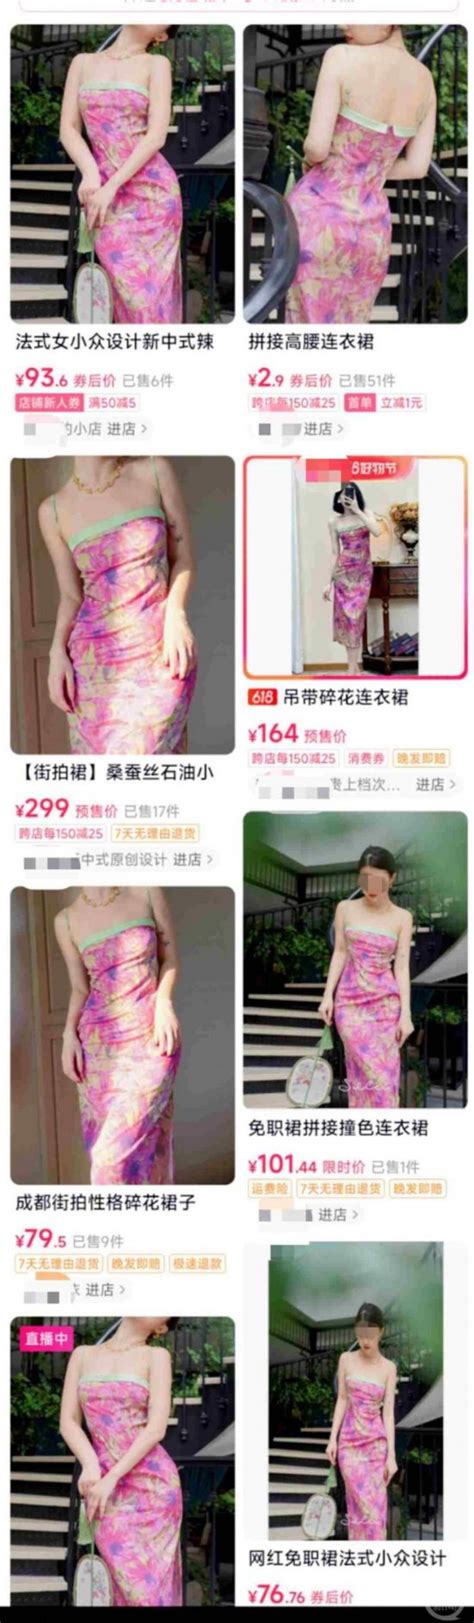 中国国企“牵手门”涉事女子同款裙子销量激增_第一金融网